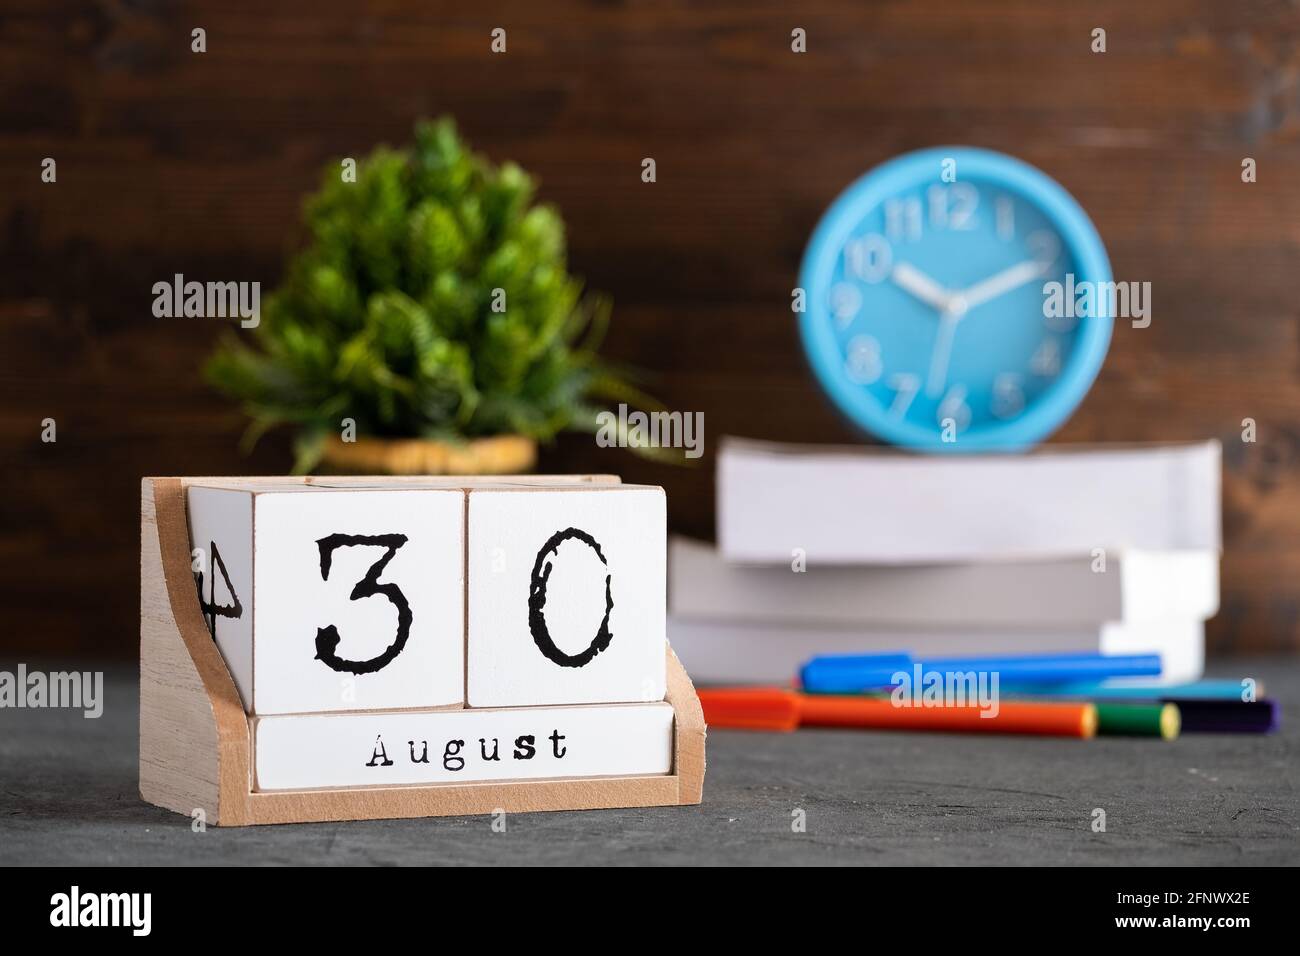 30 août. Août 30 calendrier cube en bois avec des objets flous sur fond. Banque D'Images